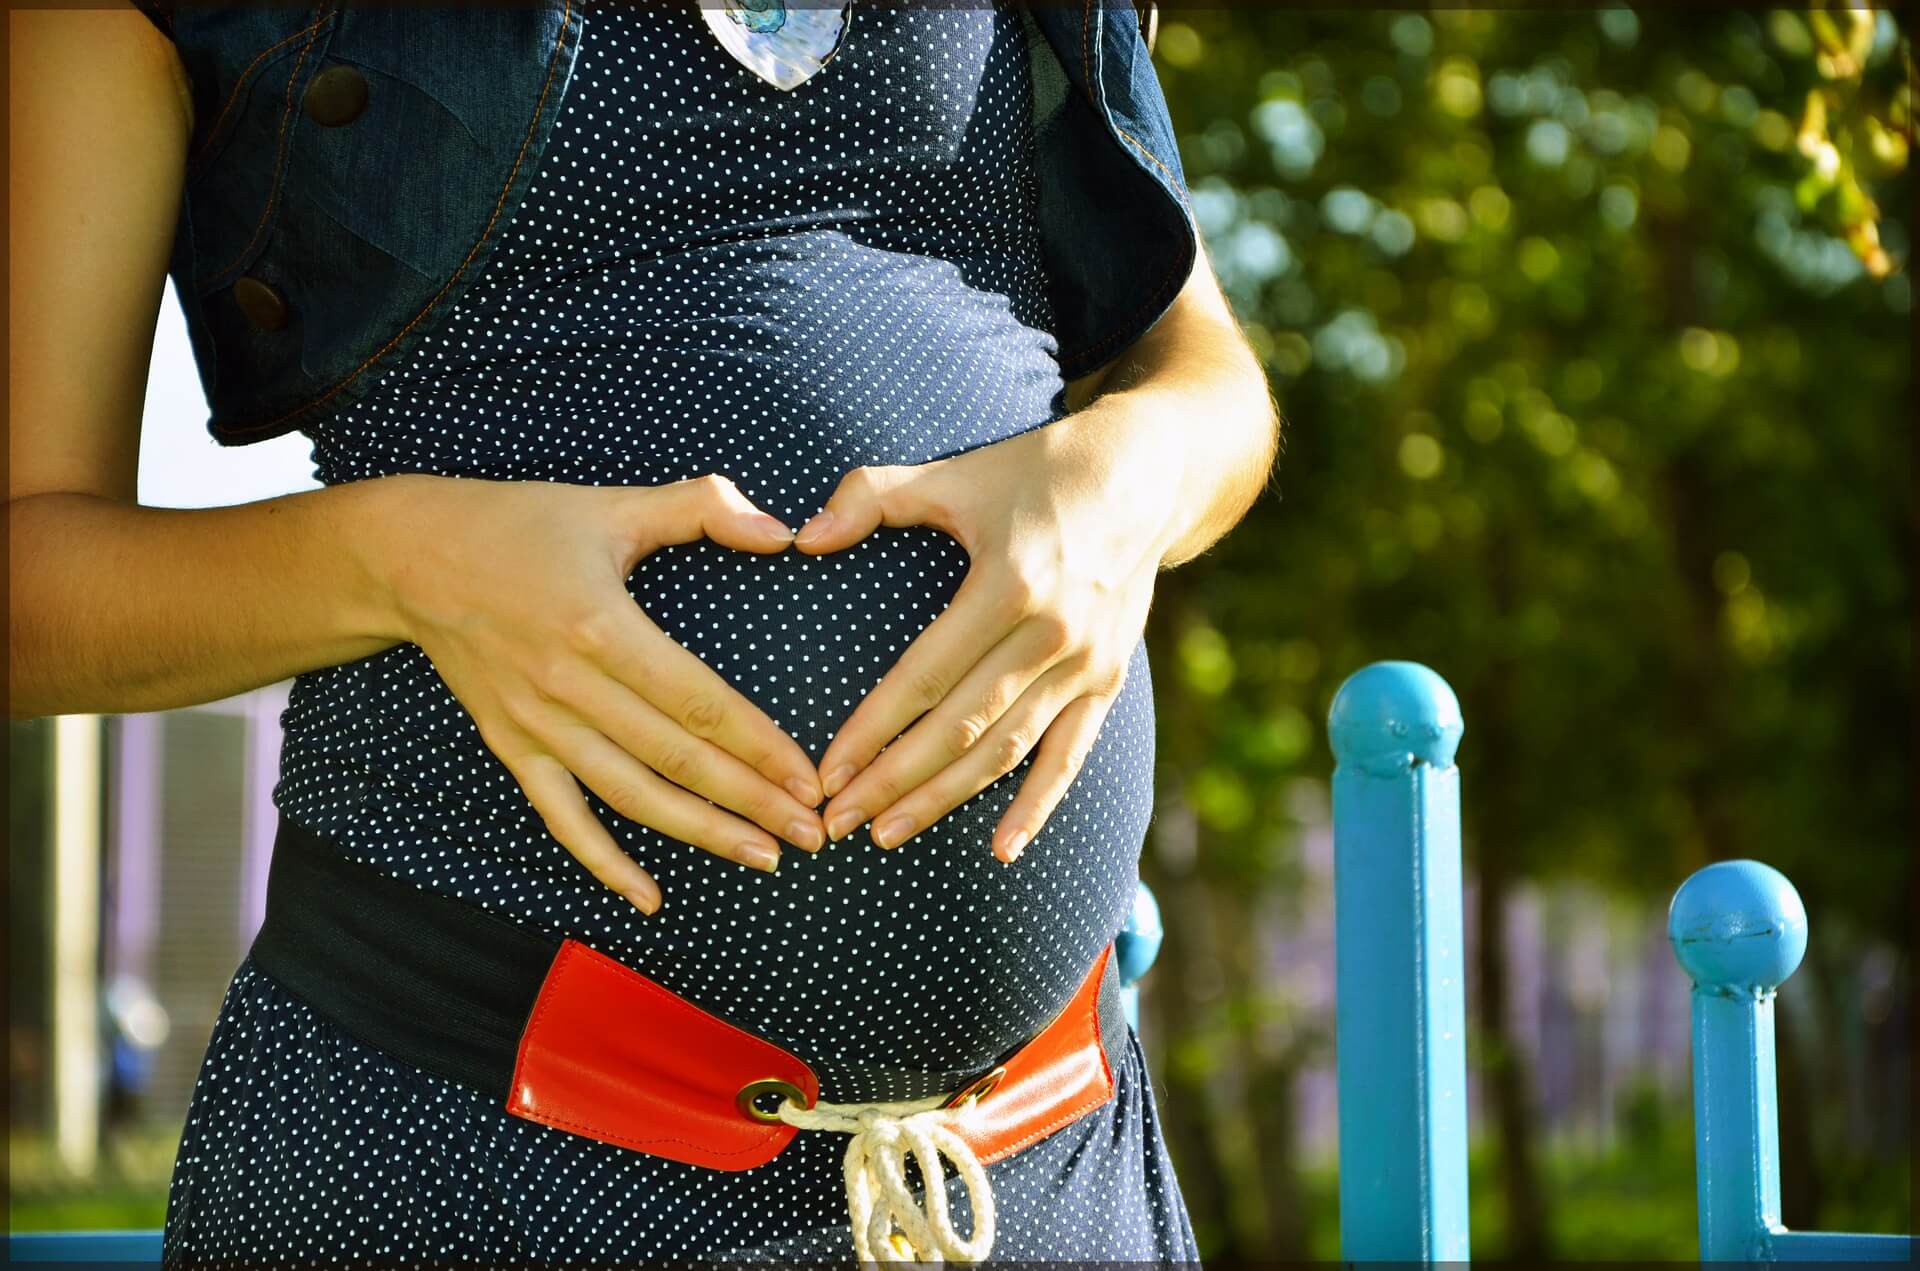 الأسبوع الـ38 للحمل: علامات الحمل وحجم الجنين وقائمة مهامكِ!